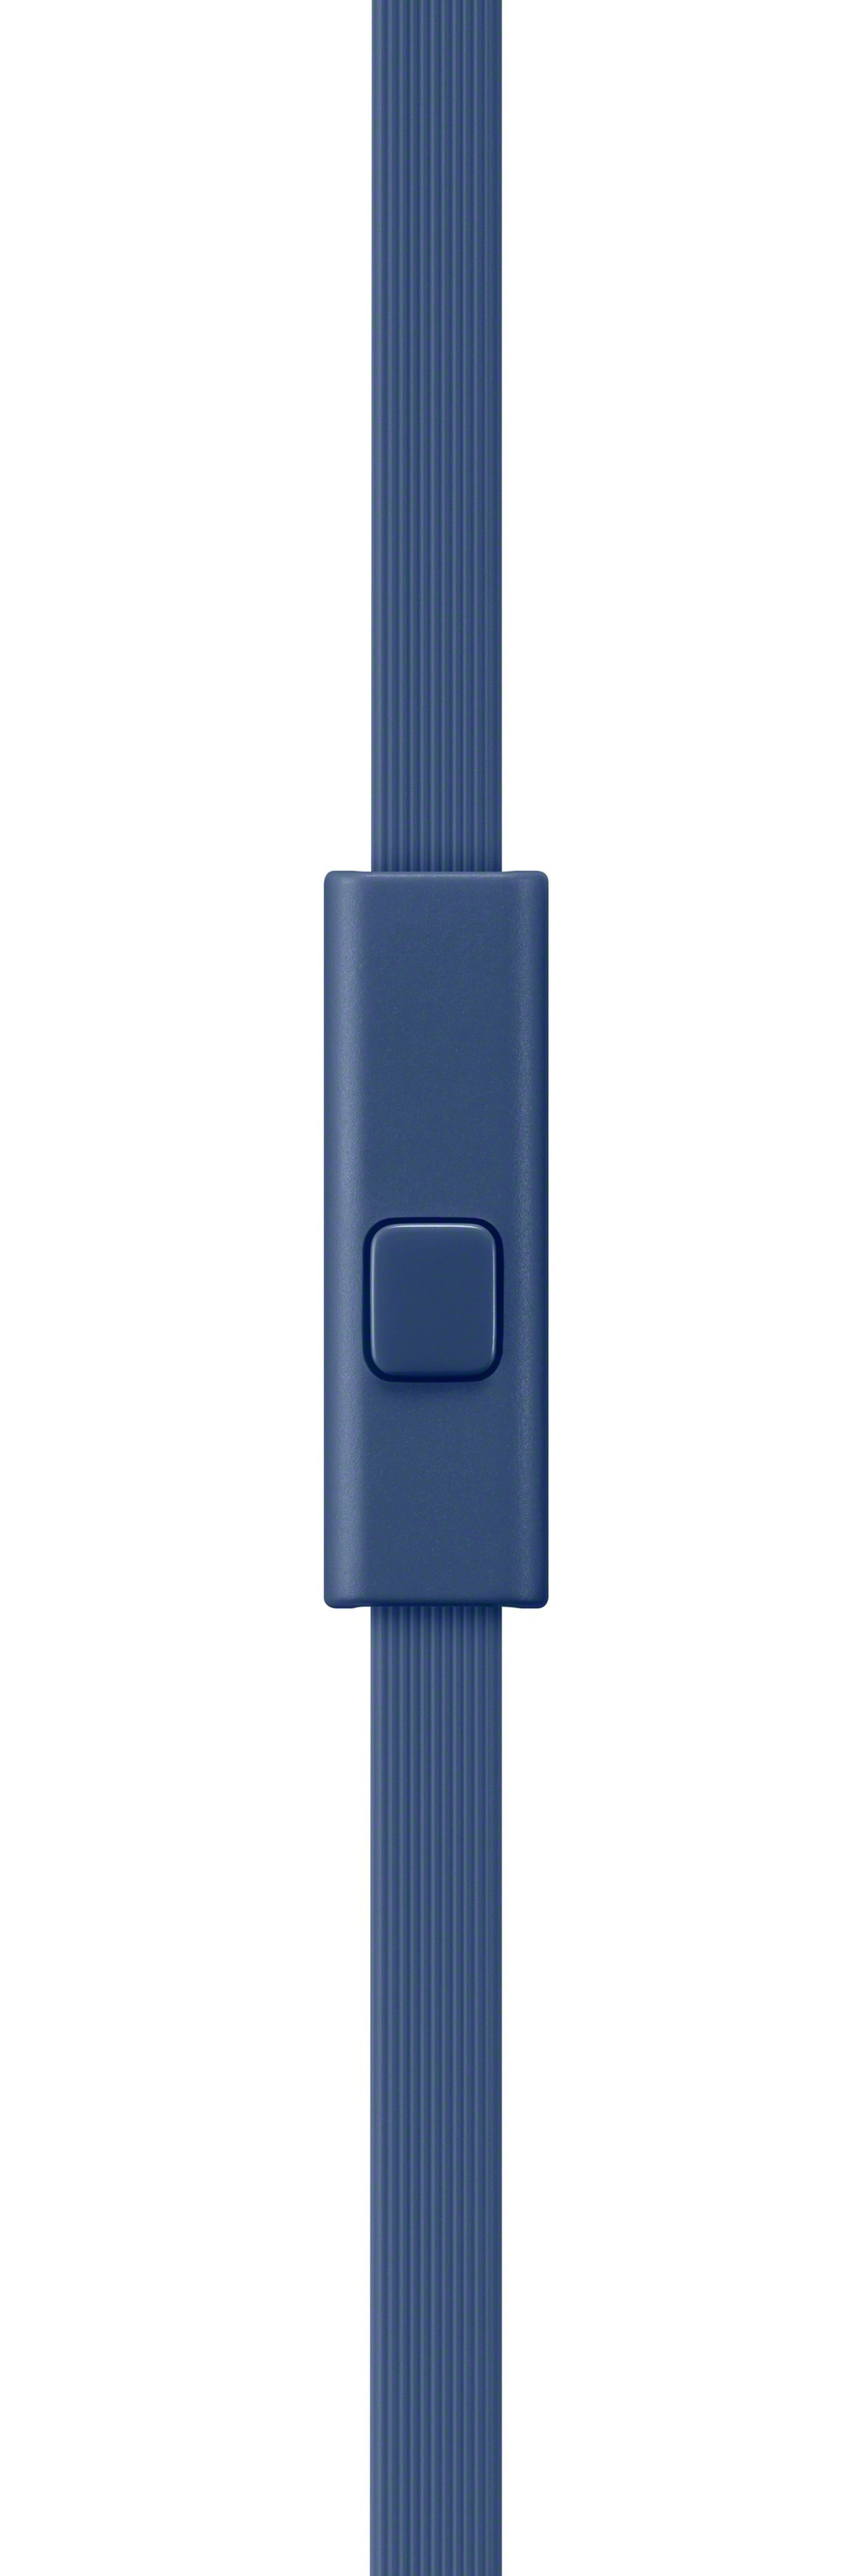 SONY MDR-XB550AP, On-ear Kopfhörer Blau